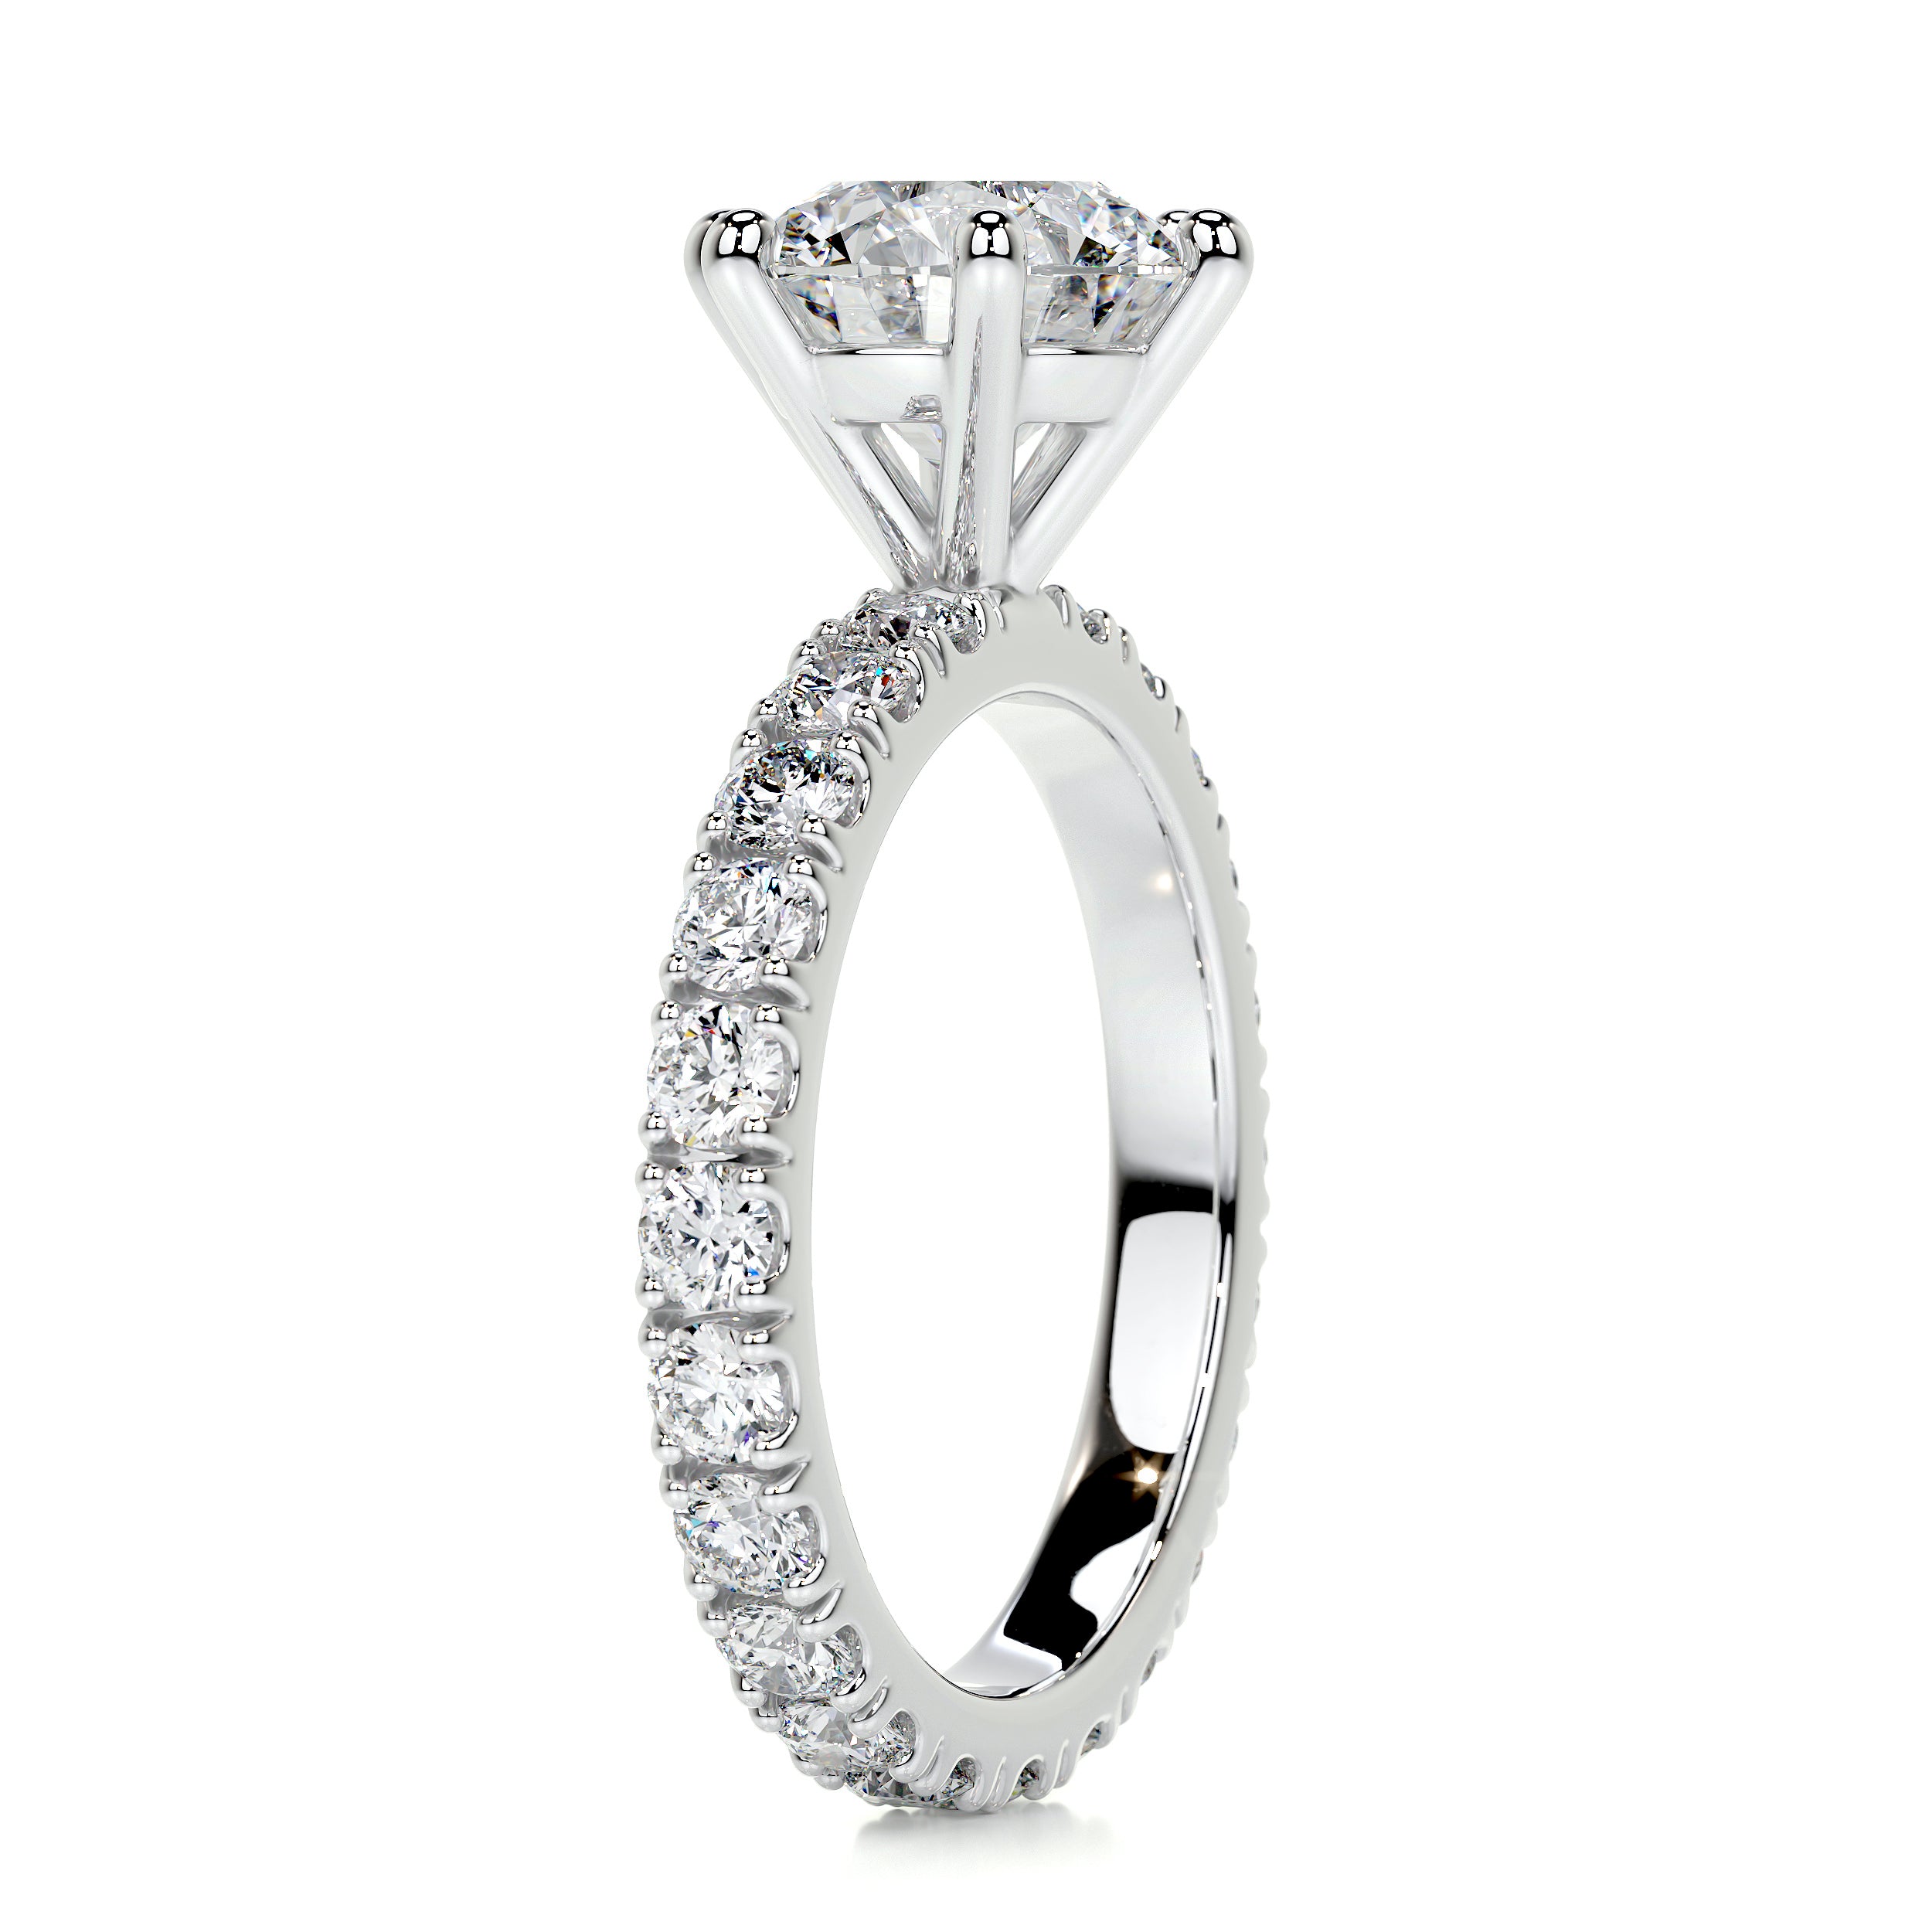 Jane Diamond Engagement Ring   (2.25 Carat) -14K White Gold